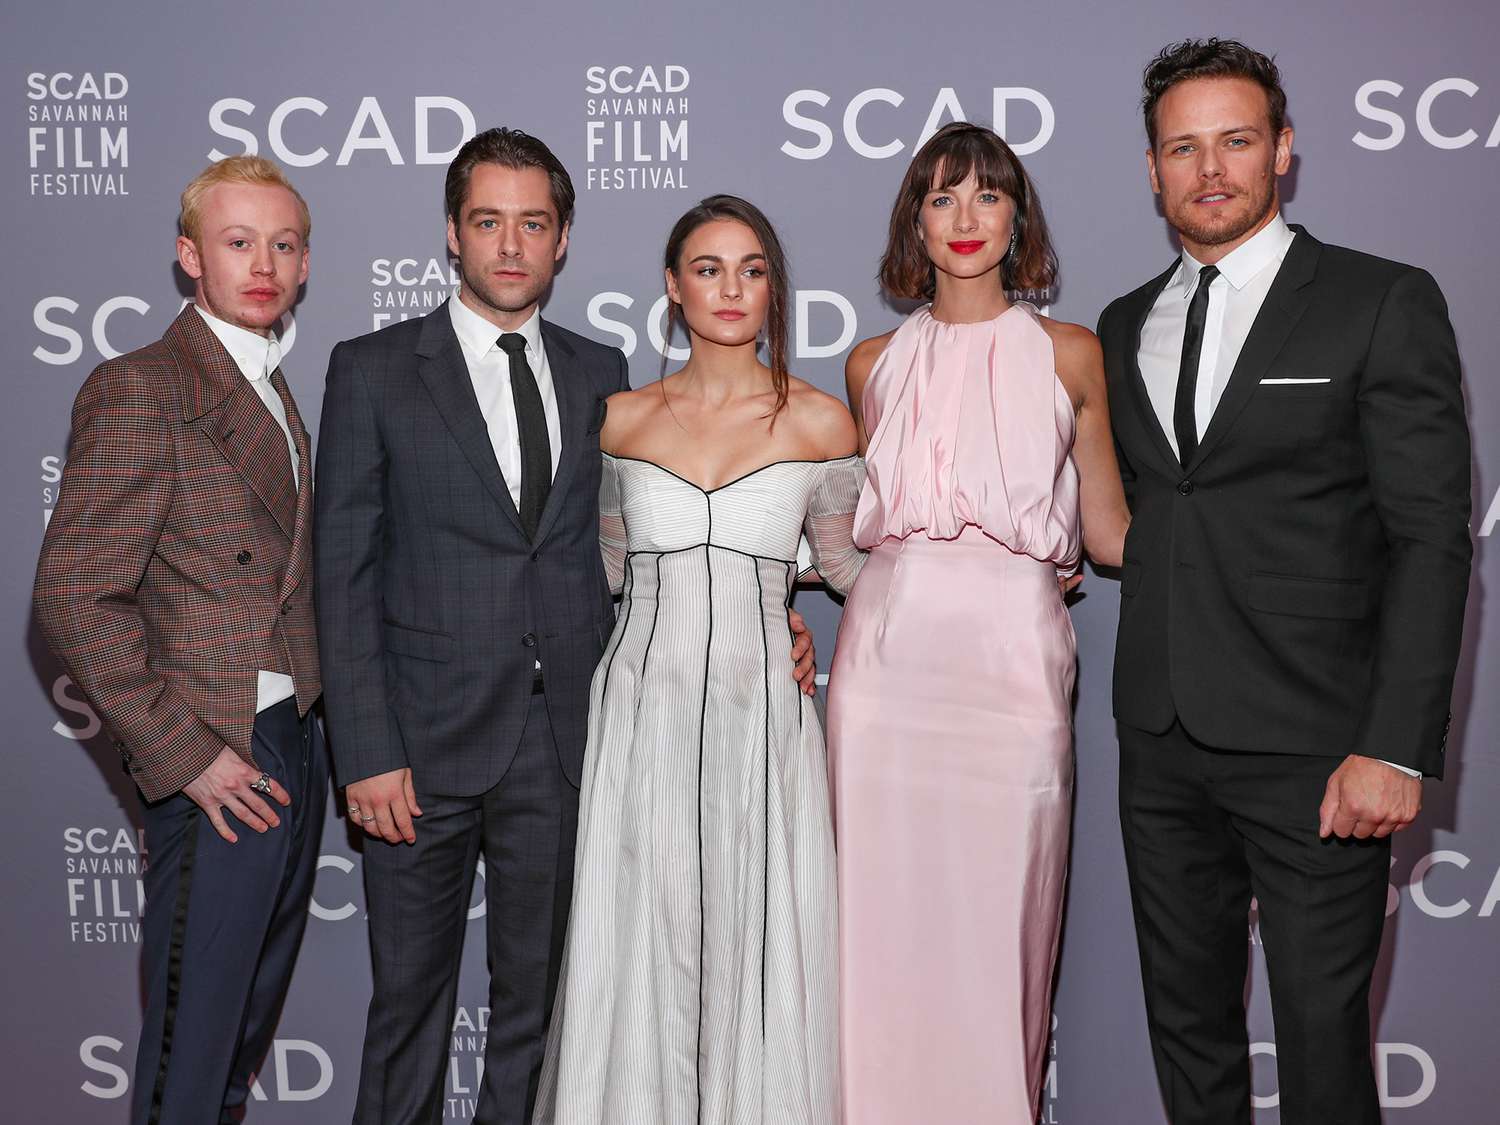 John Bell, Richard Rankin, Sophie Skelton, Caitriona Balfe, and Sam Heughan attend the 21st SCAD Savannah Film Festival Red Carpet for "Outlander" Season Four